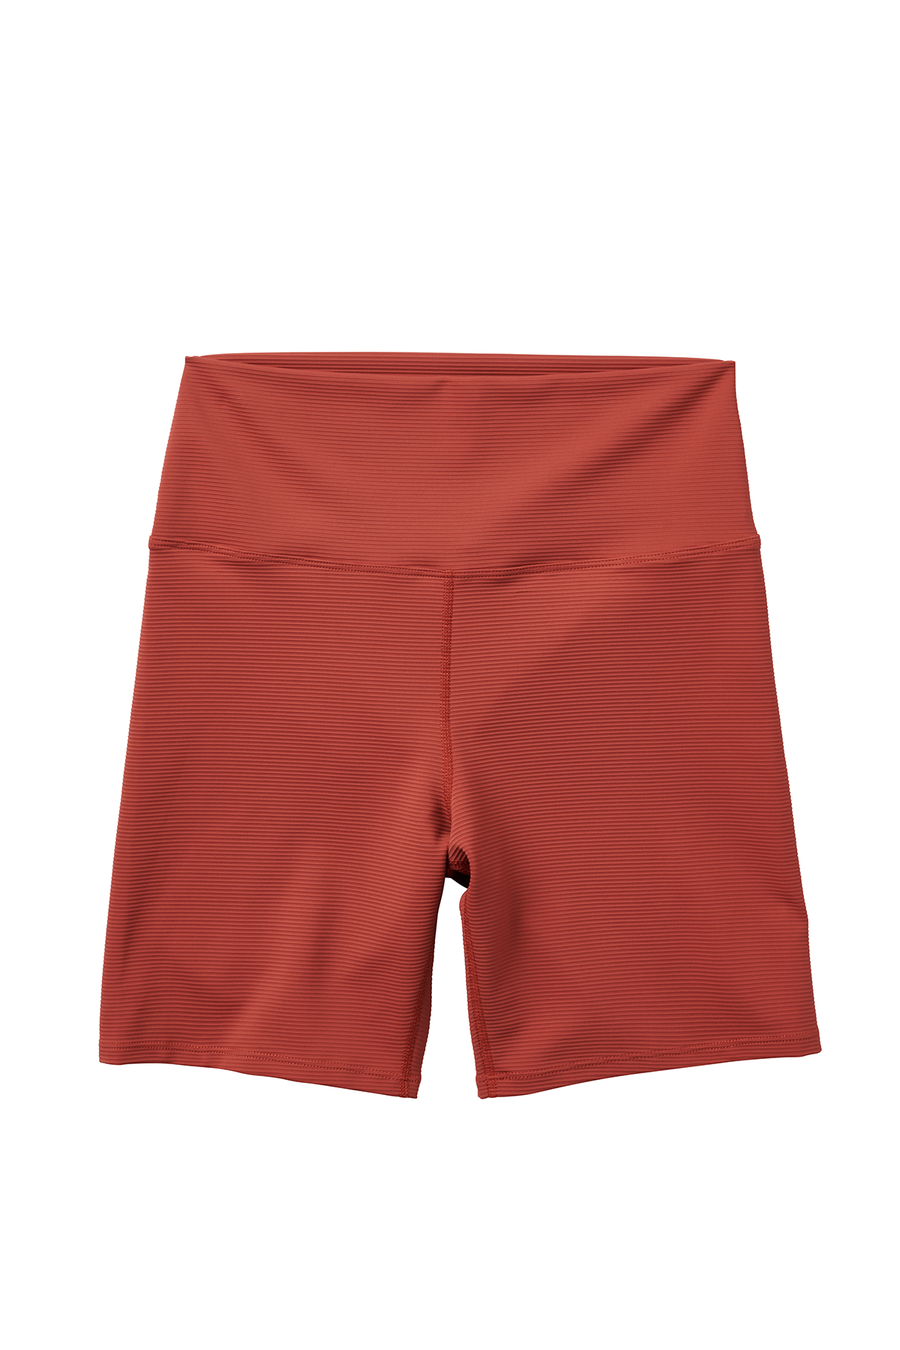 Women's Bike Shorts / Ribbed Fabric / Sunbeam